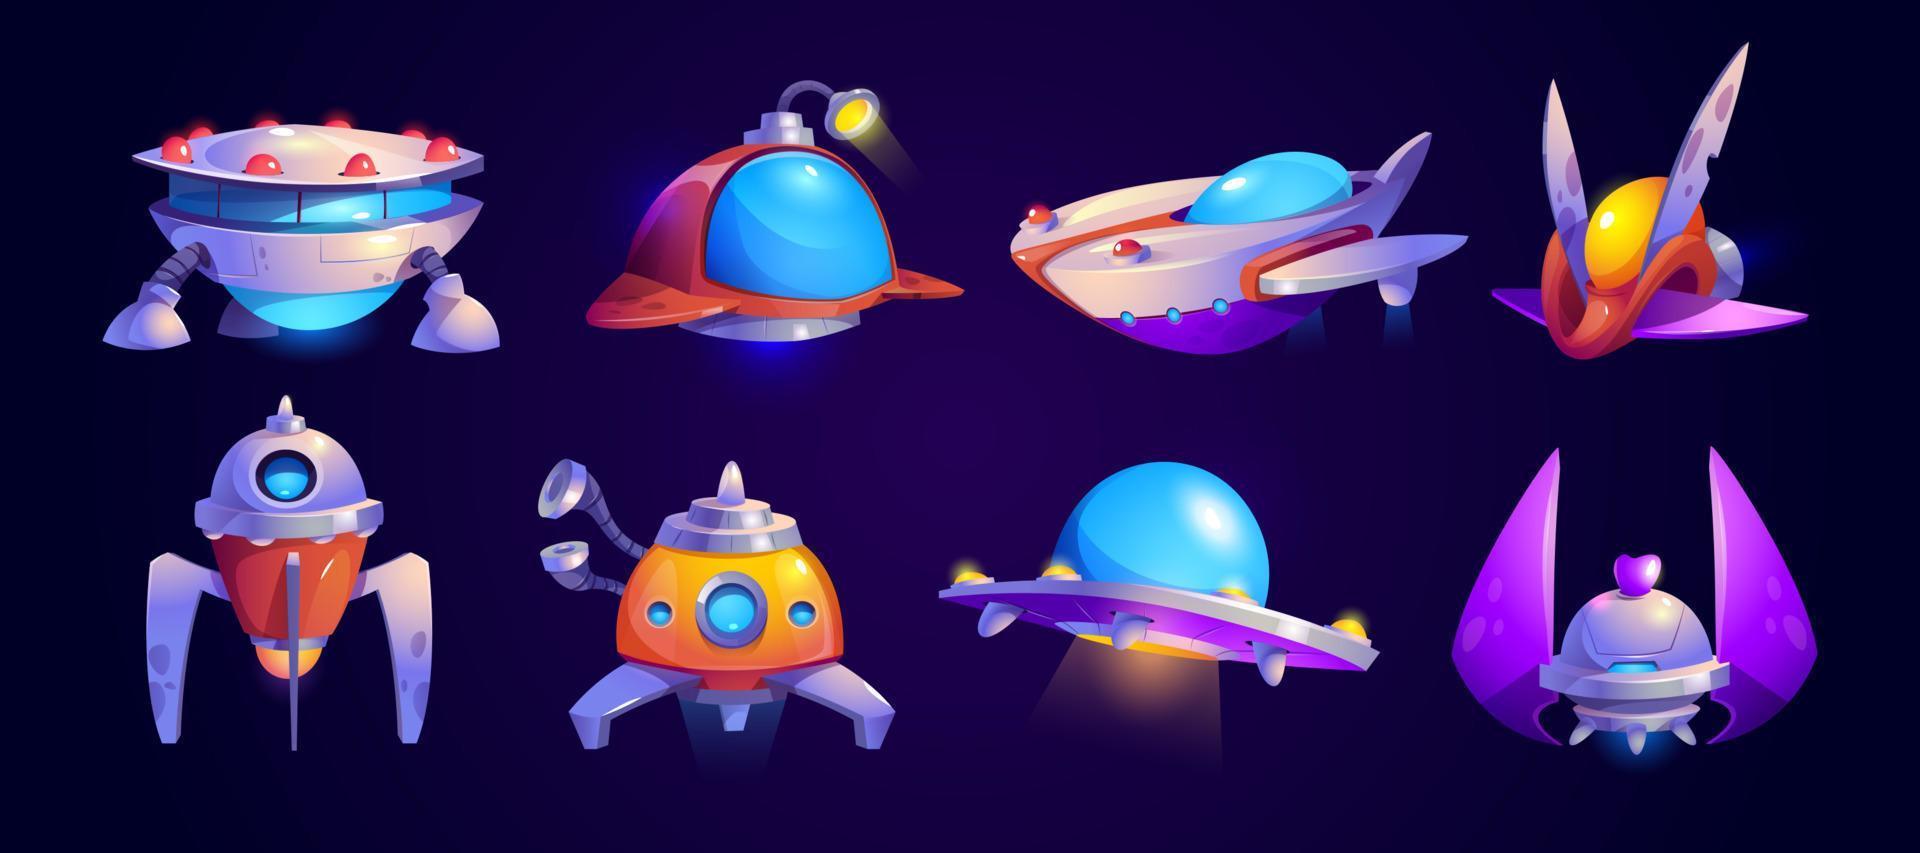 nave espacial alienígena, conjunto de vectores de iconos de juego ovni.